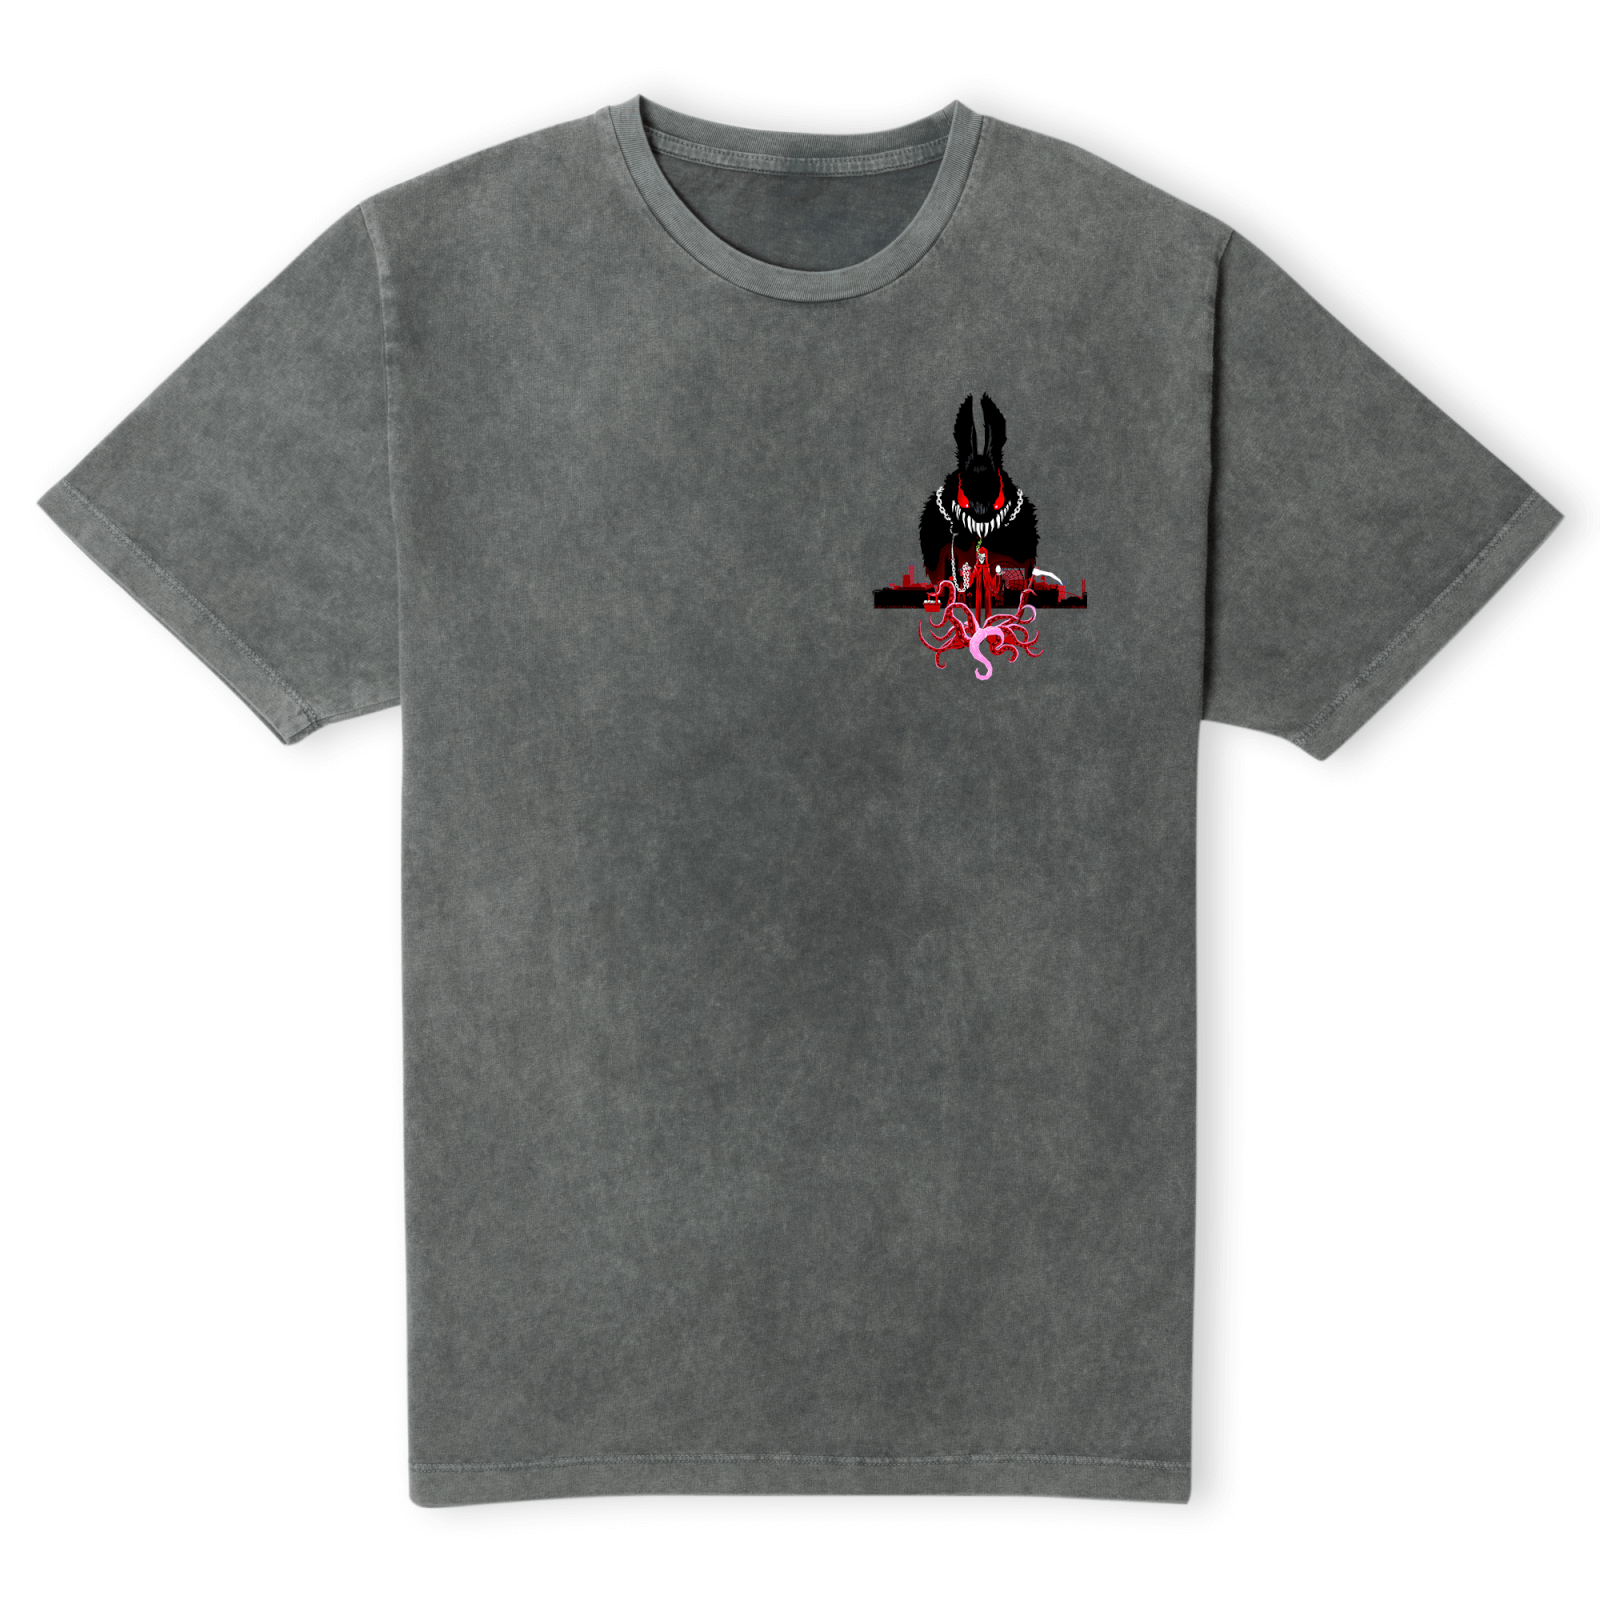 Grimmfest 2022 Easter Bunny Unisex T-Shirt - Black Acid Wash - S - Black Acid Wash